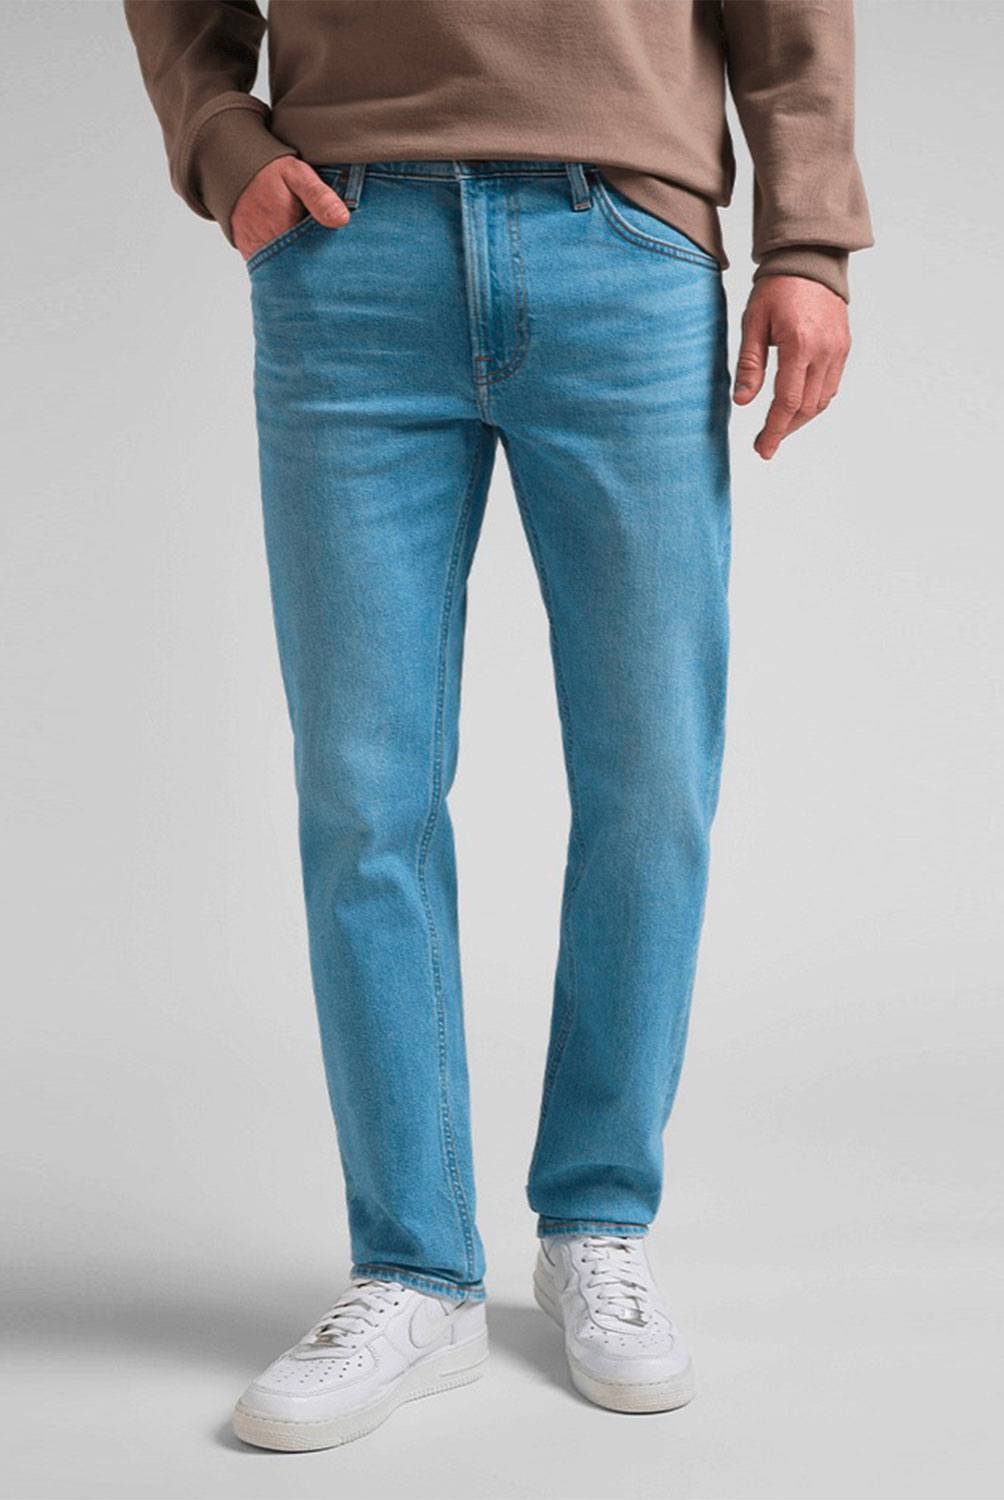 LEE Jeans Regular Fit Hombre Lee | falabella.com